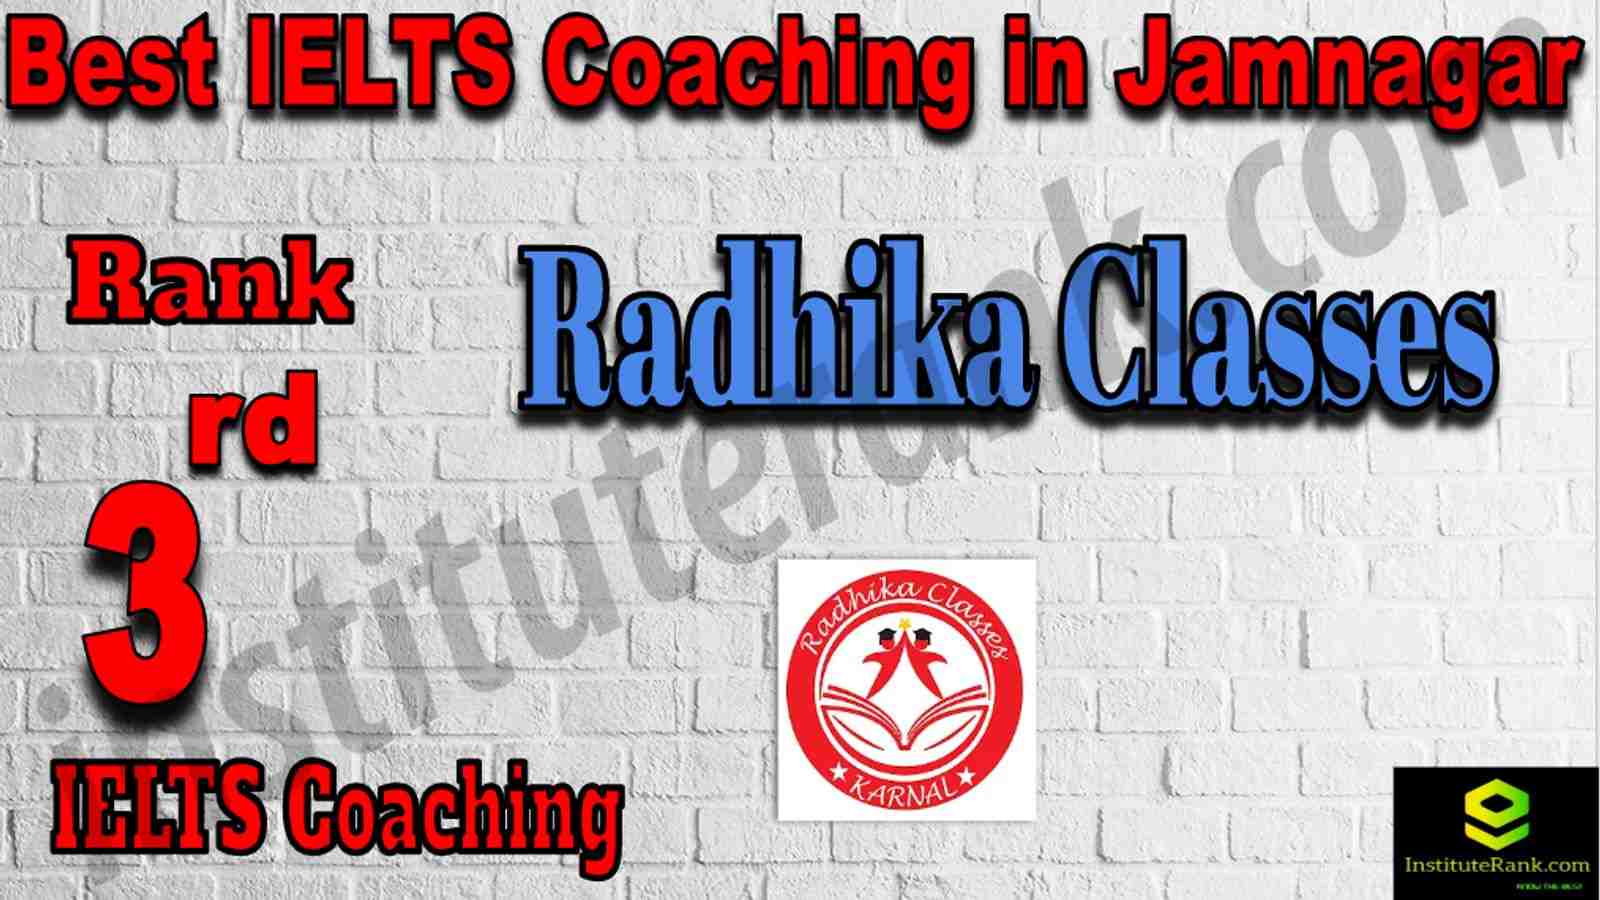 3rd Best IELTS Coaching in Jamnagar